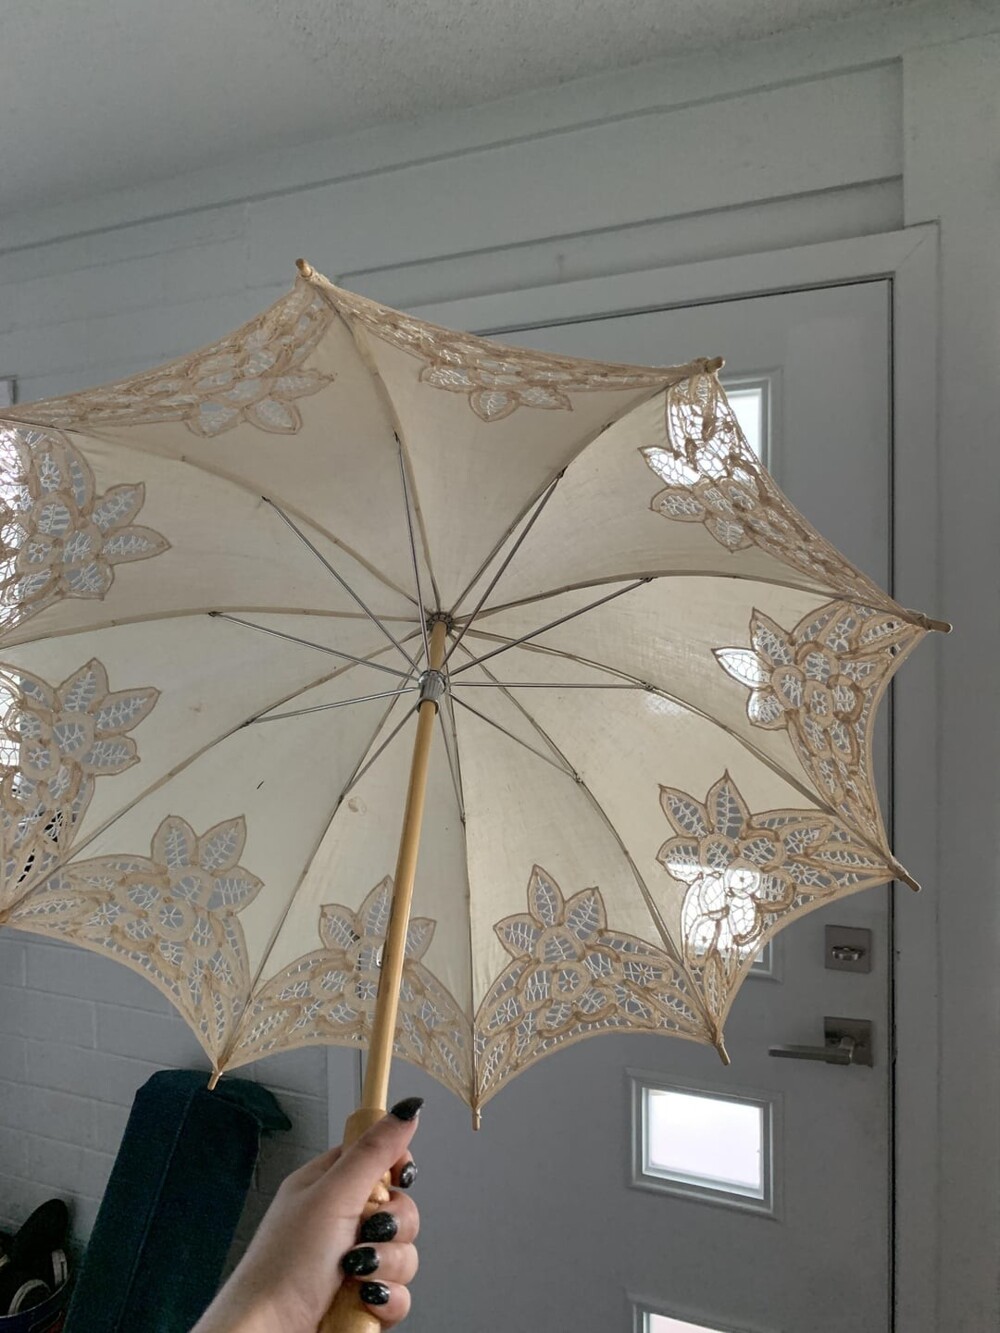 4. Красивый зонт от солнца с местного блошиного рынка